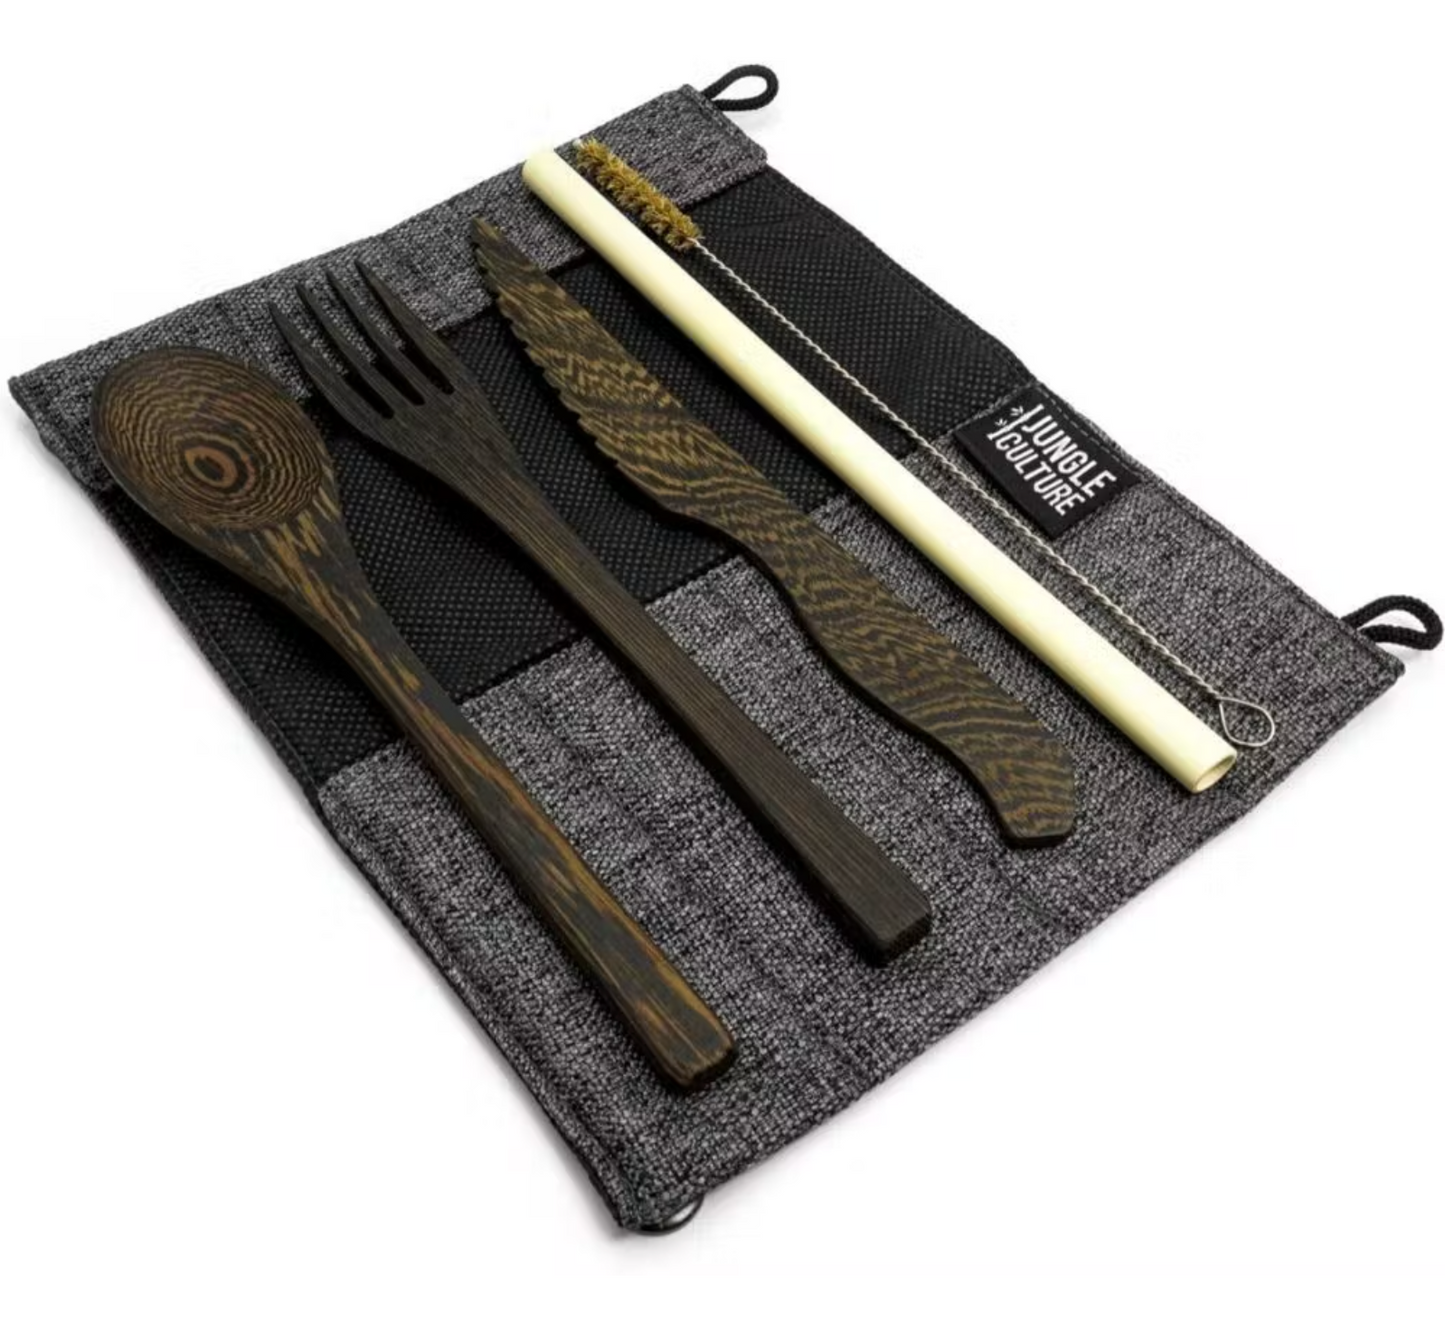 Reusable dark wood cutlery set in natural dark grey cotton pouch | wooden utensils